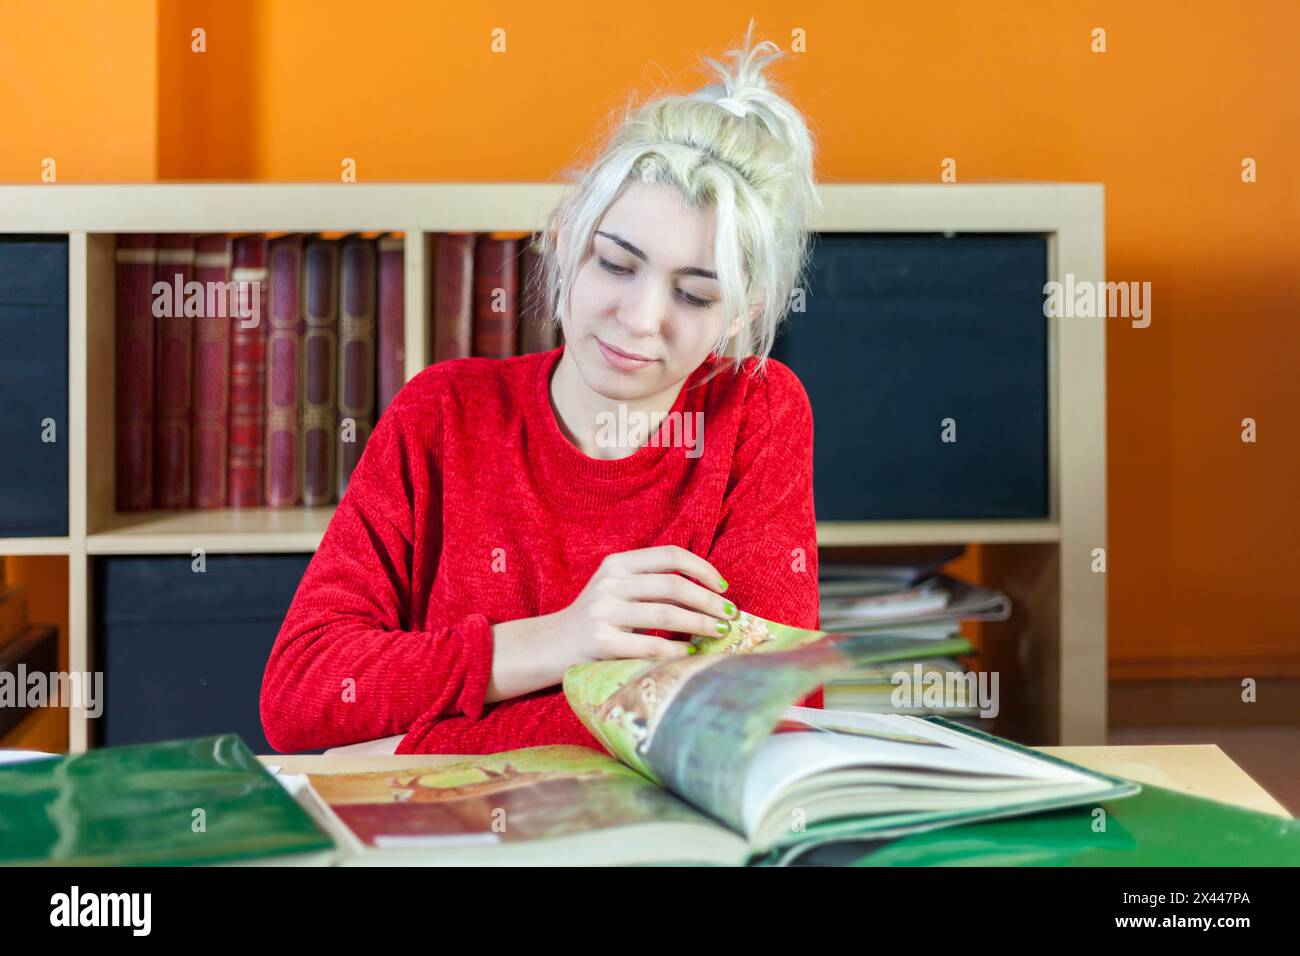 Junge Frau mit gebleichtem blondem Haar, mit Fokus auf Lesen. Rot gekleidet, an einem Bücherpult sitzend, umgeben von Büchern, symbolisiert tiefes Konzentra Stockfoto